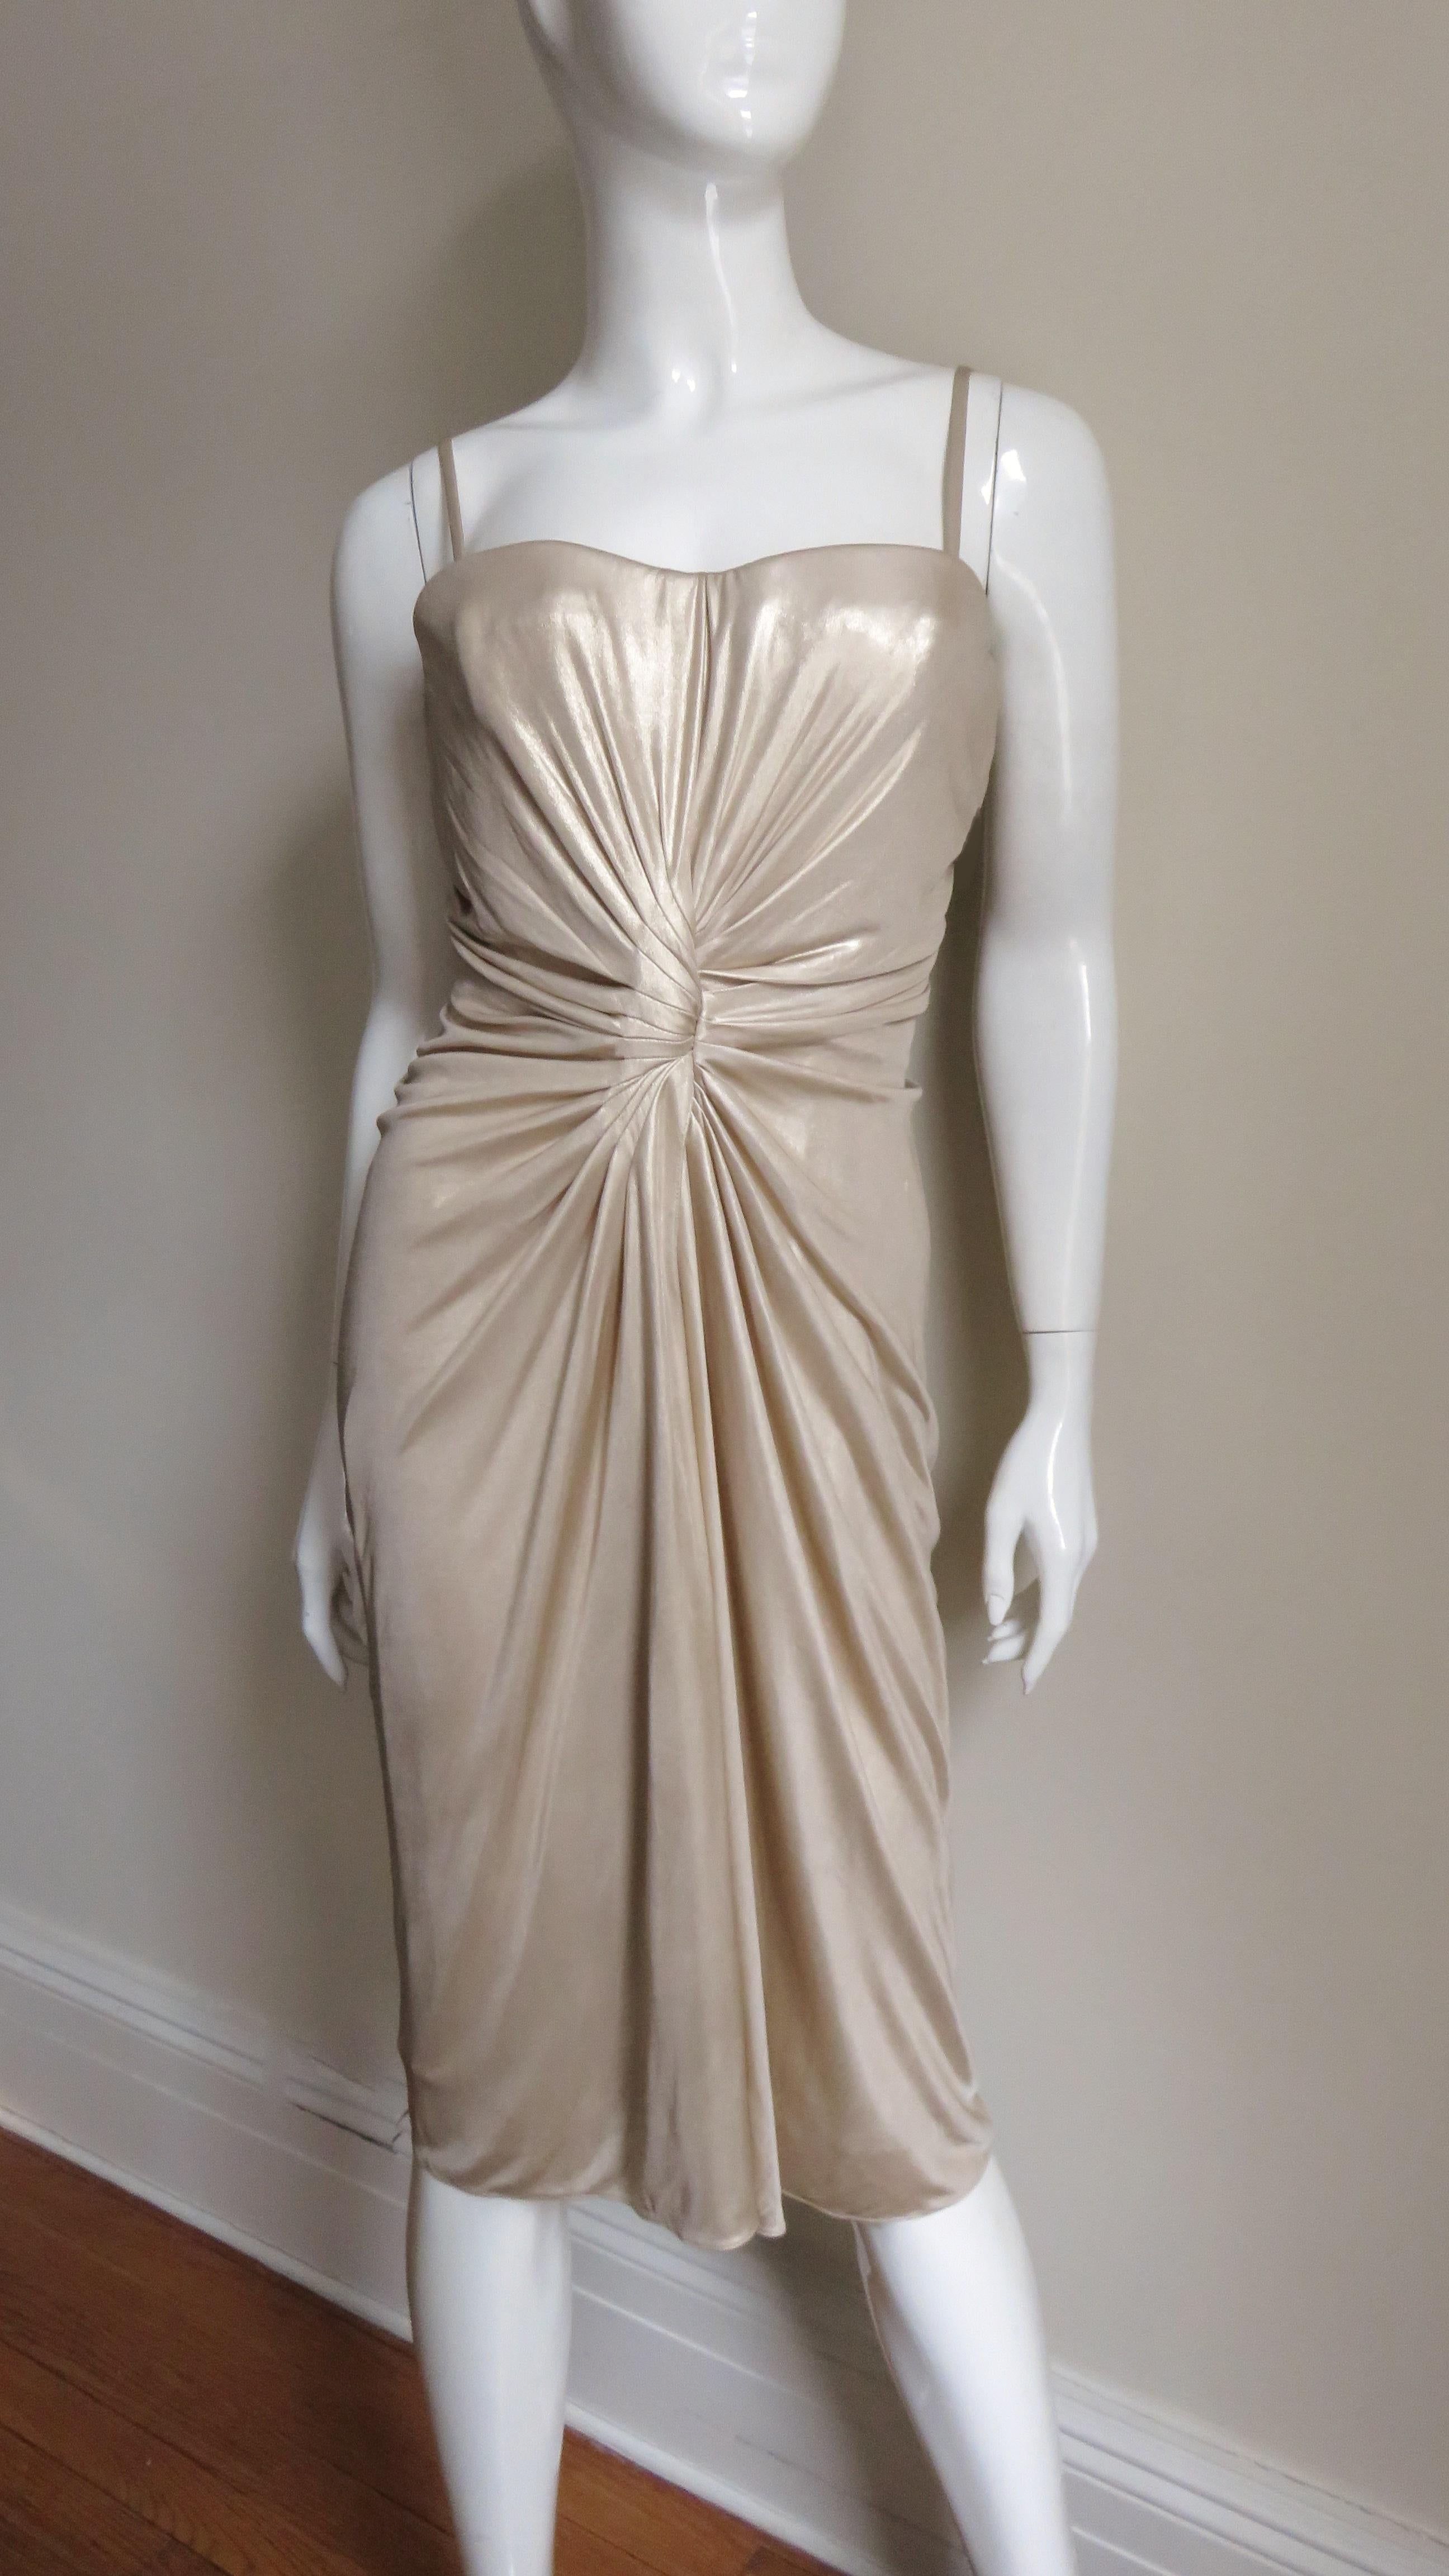 Magnifique robe en maille de soie fine dorée de Christian Dior. Elle est dotée d'un corset intérieur désossé avec des bonnets à armature, et de bretelles spaghetti détachables permettant de la porter également sans bretelles. La robe est très